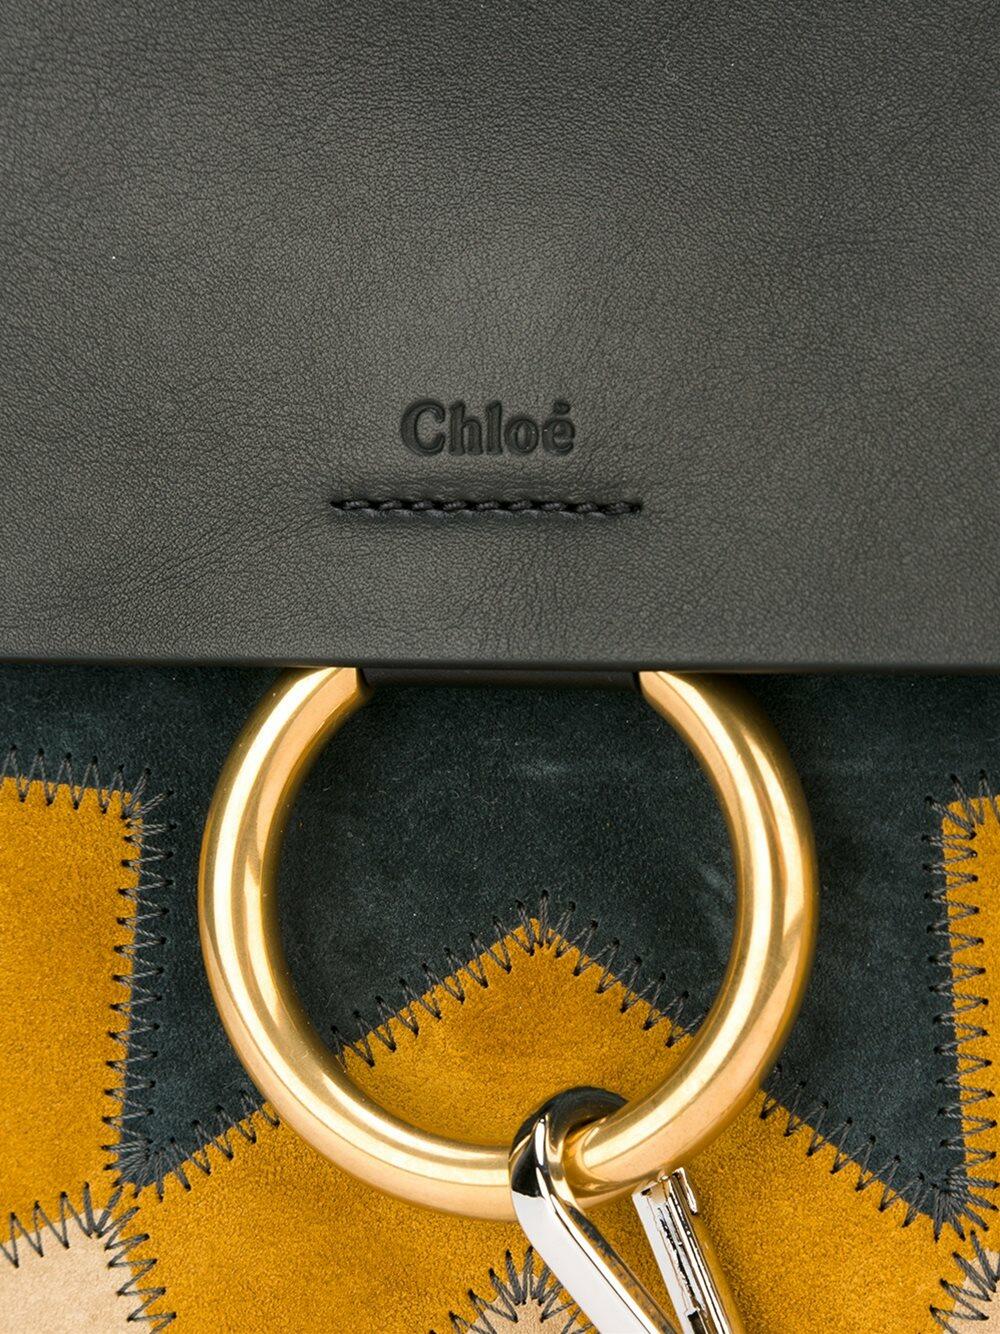 Chloé - Faye Black Leather & Suede Patchwork Shoulder Bag